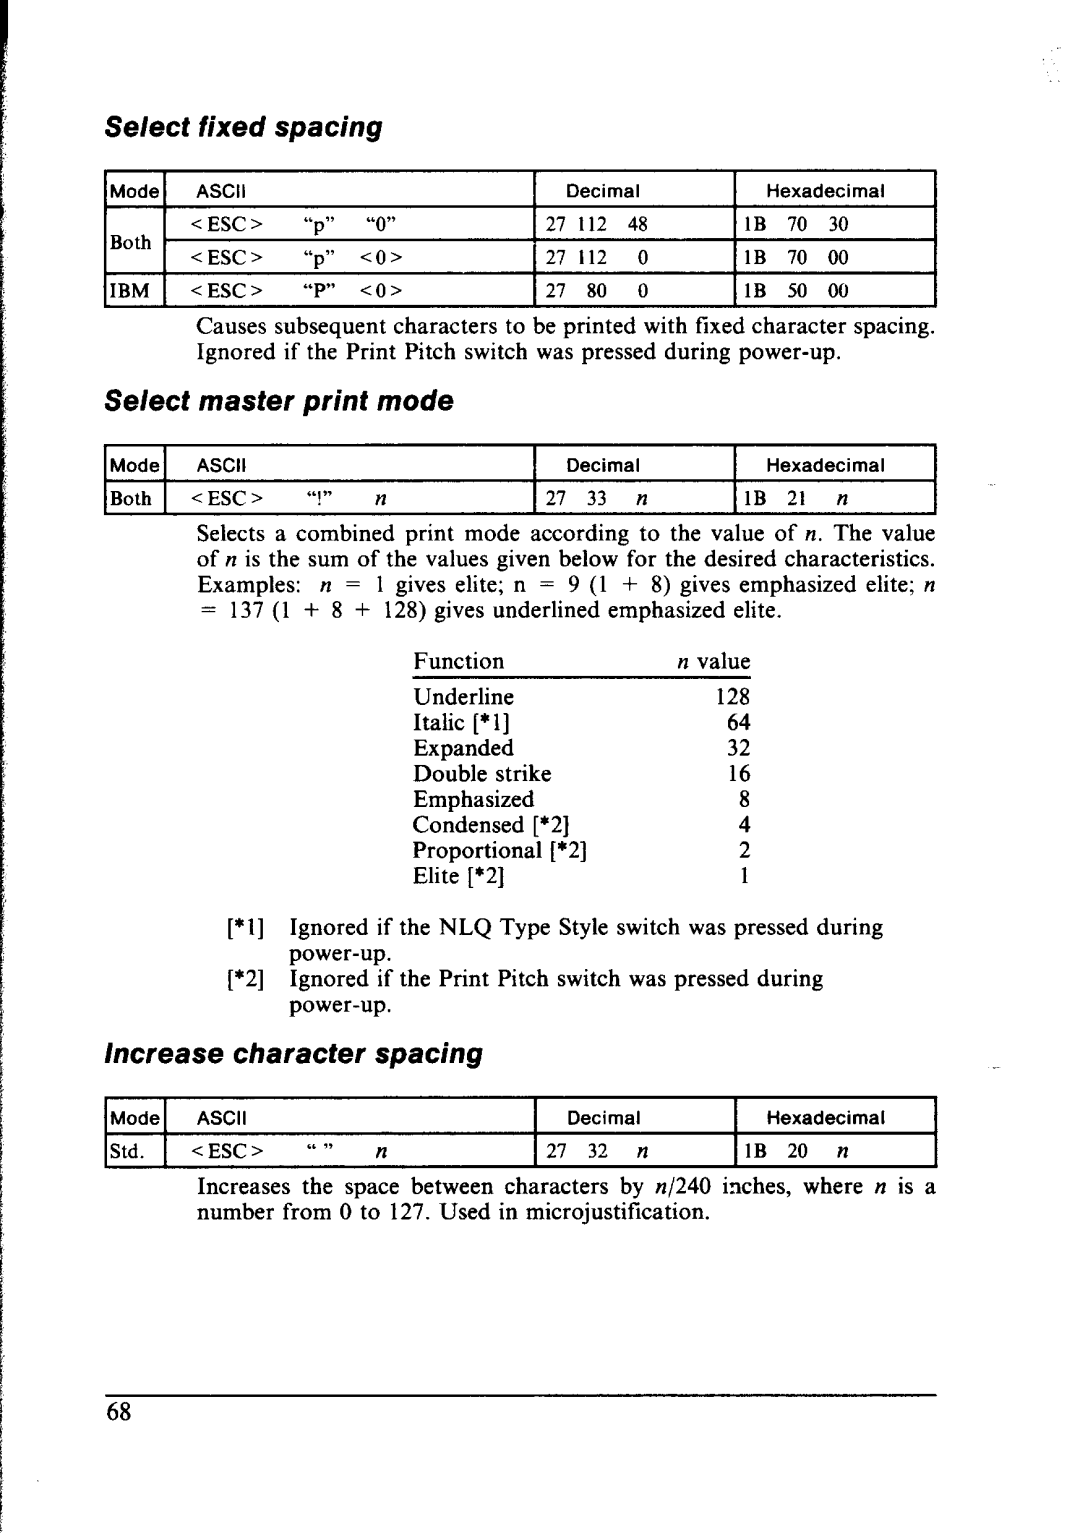 Star Micronics NX-1000 manual fixed, Select master print mode, Increase character spacing 